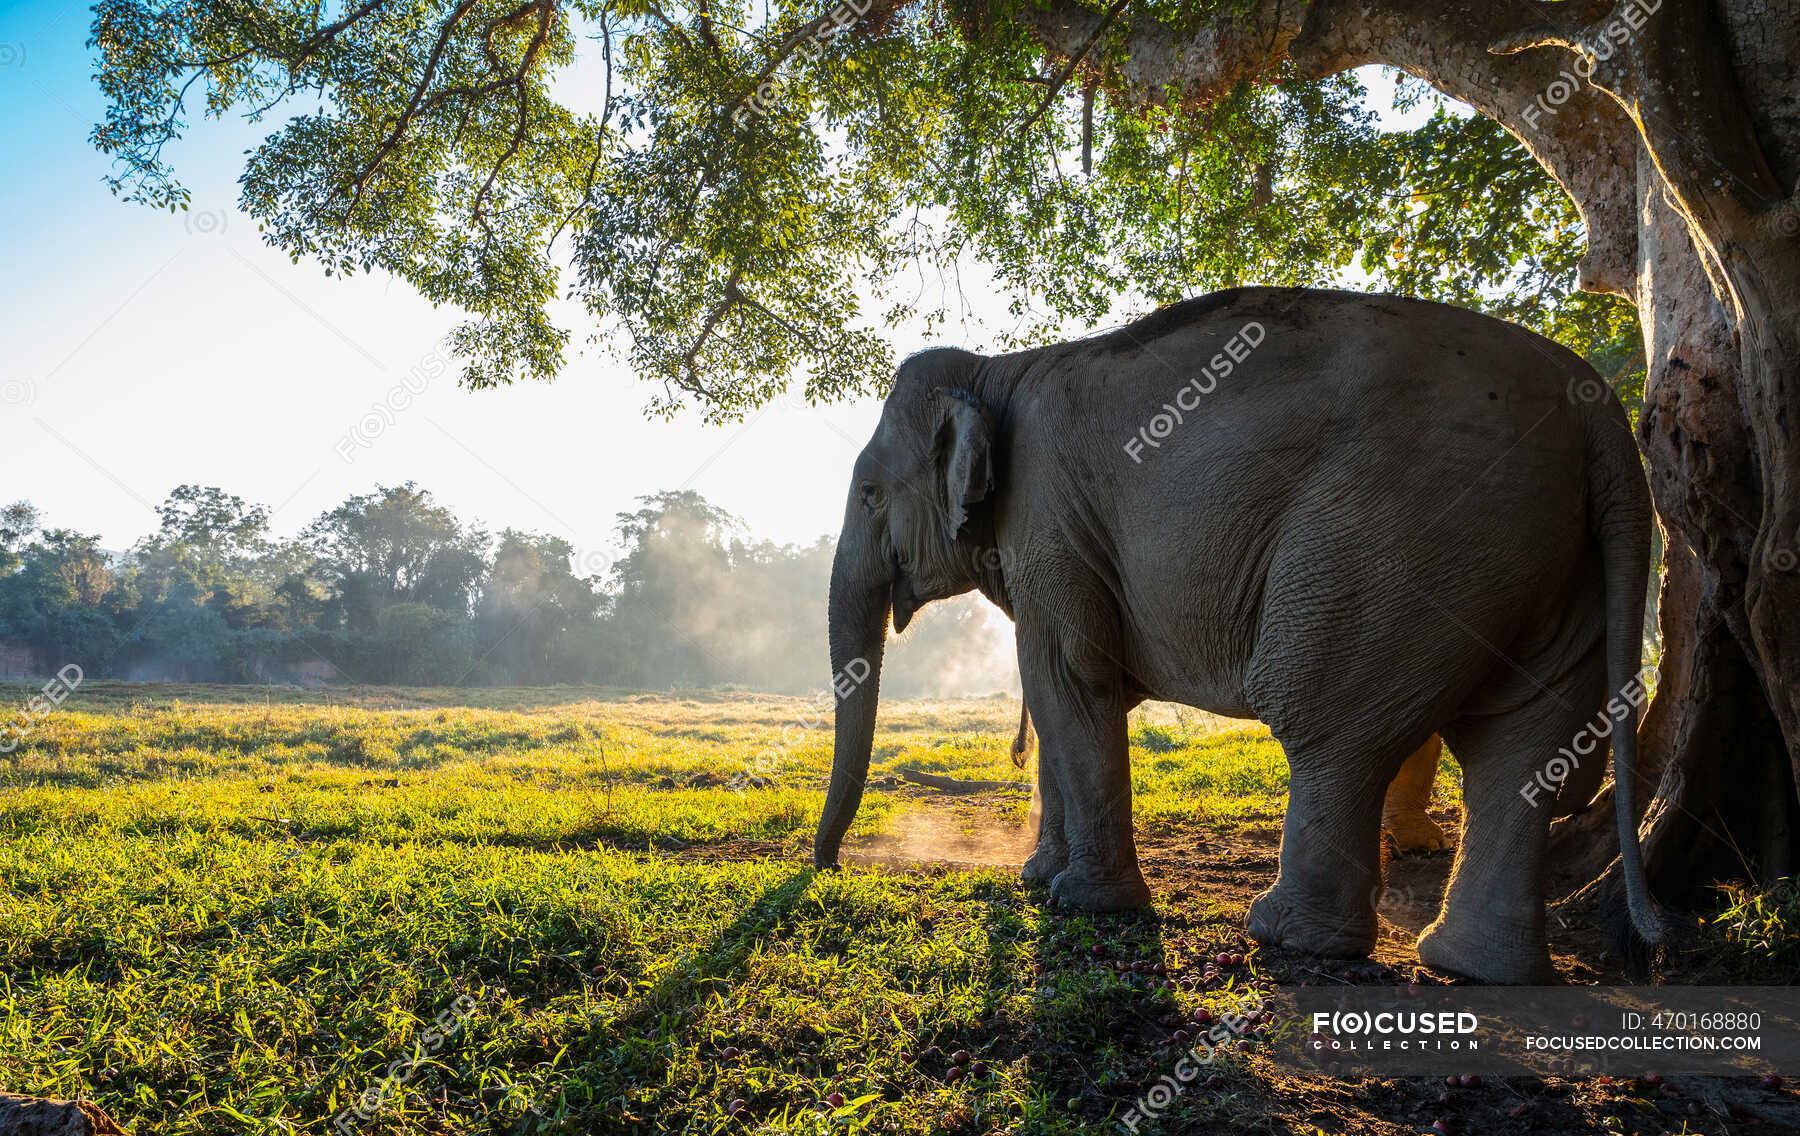 Beautiful elephant on nature background, travel place on background —  animal trunk, landscape - Stock Photo | #470168880